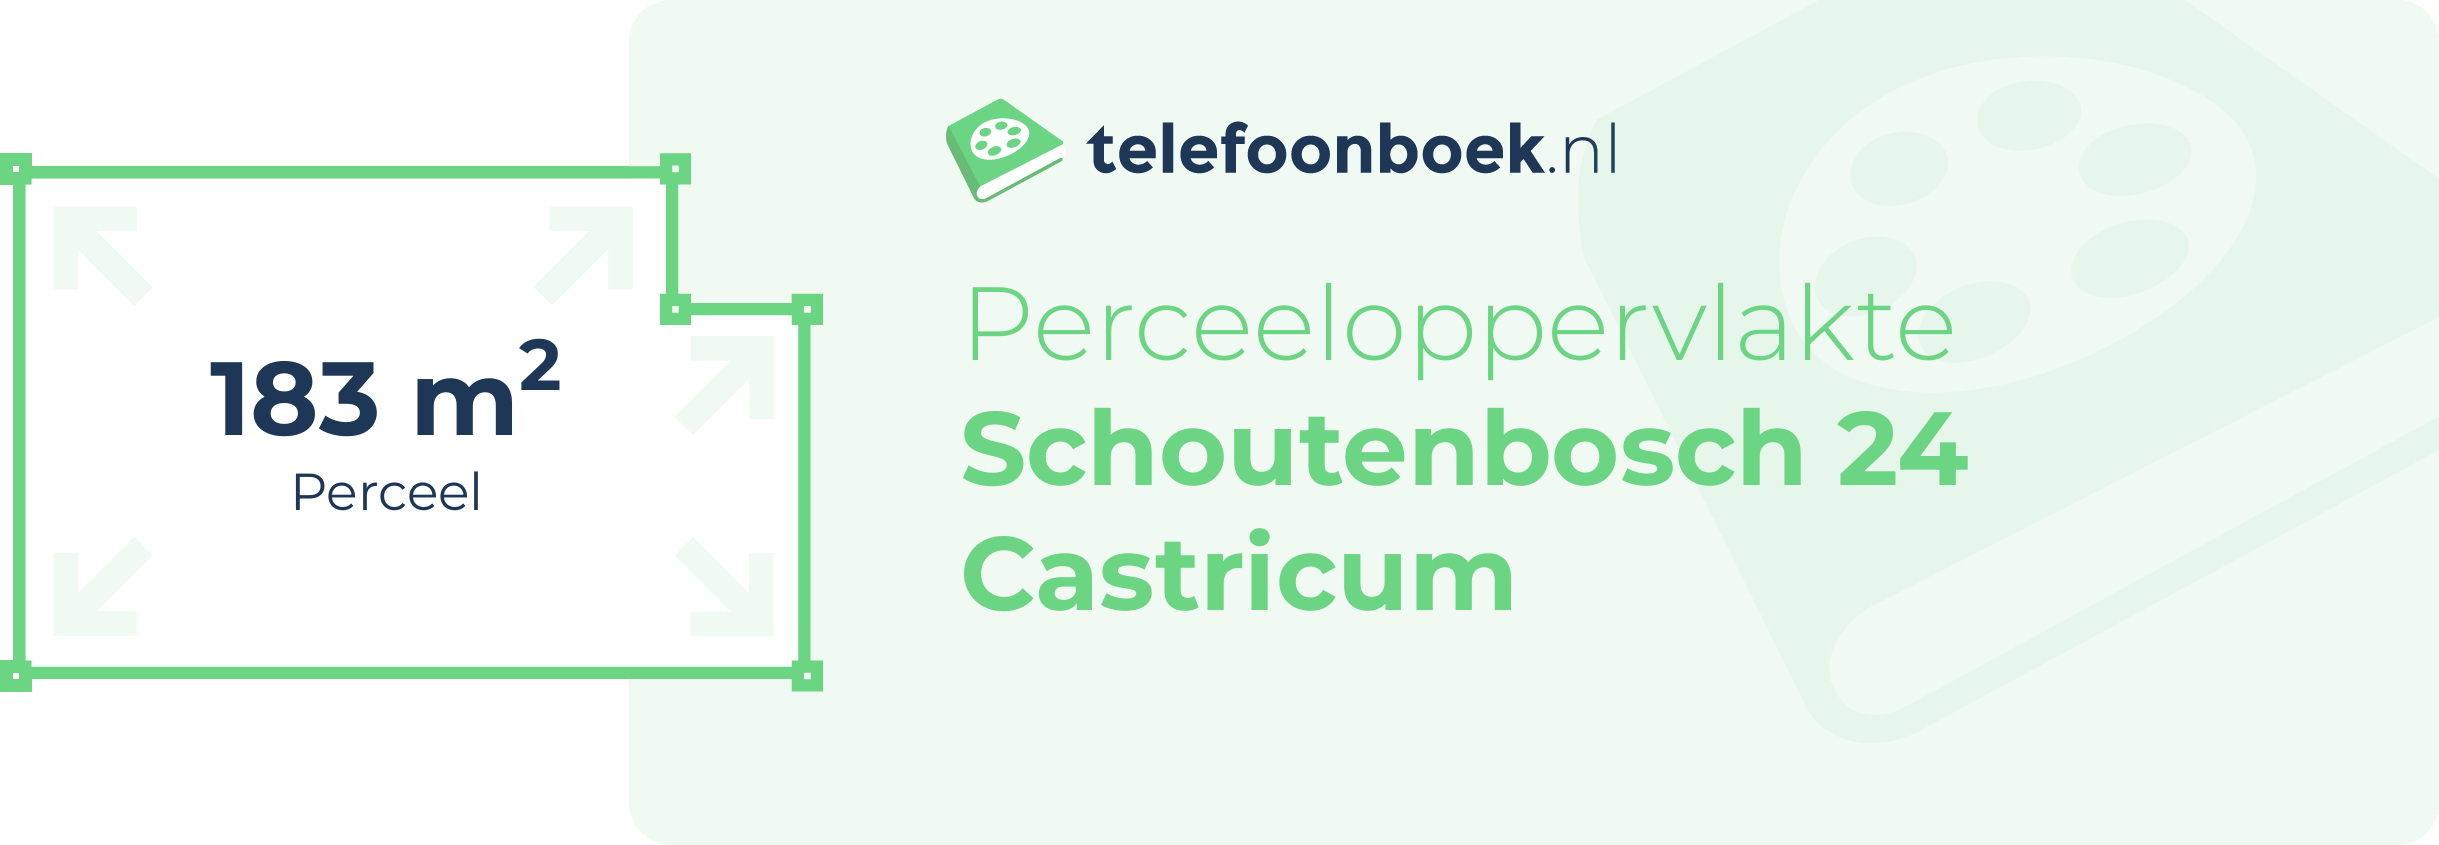 Perceeloppervlakte Schoutenbosch 24 Castricum